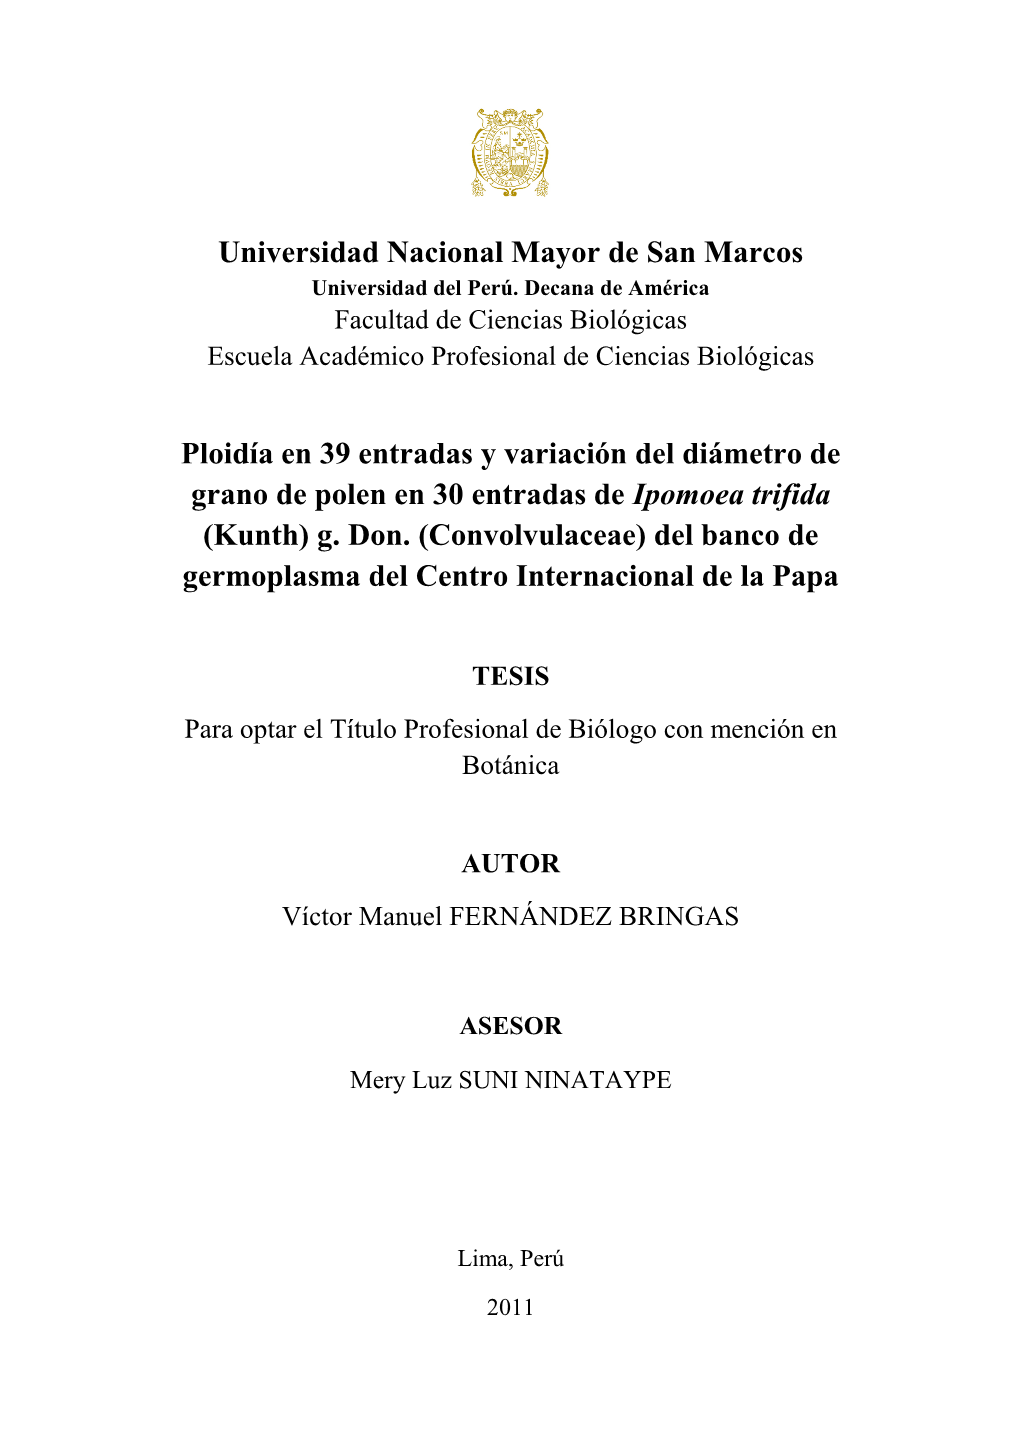 Universidad Nacional Mayor De San Marcos Ploidía En 39 Entradas Y